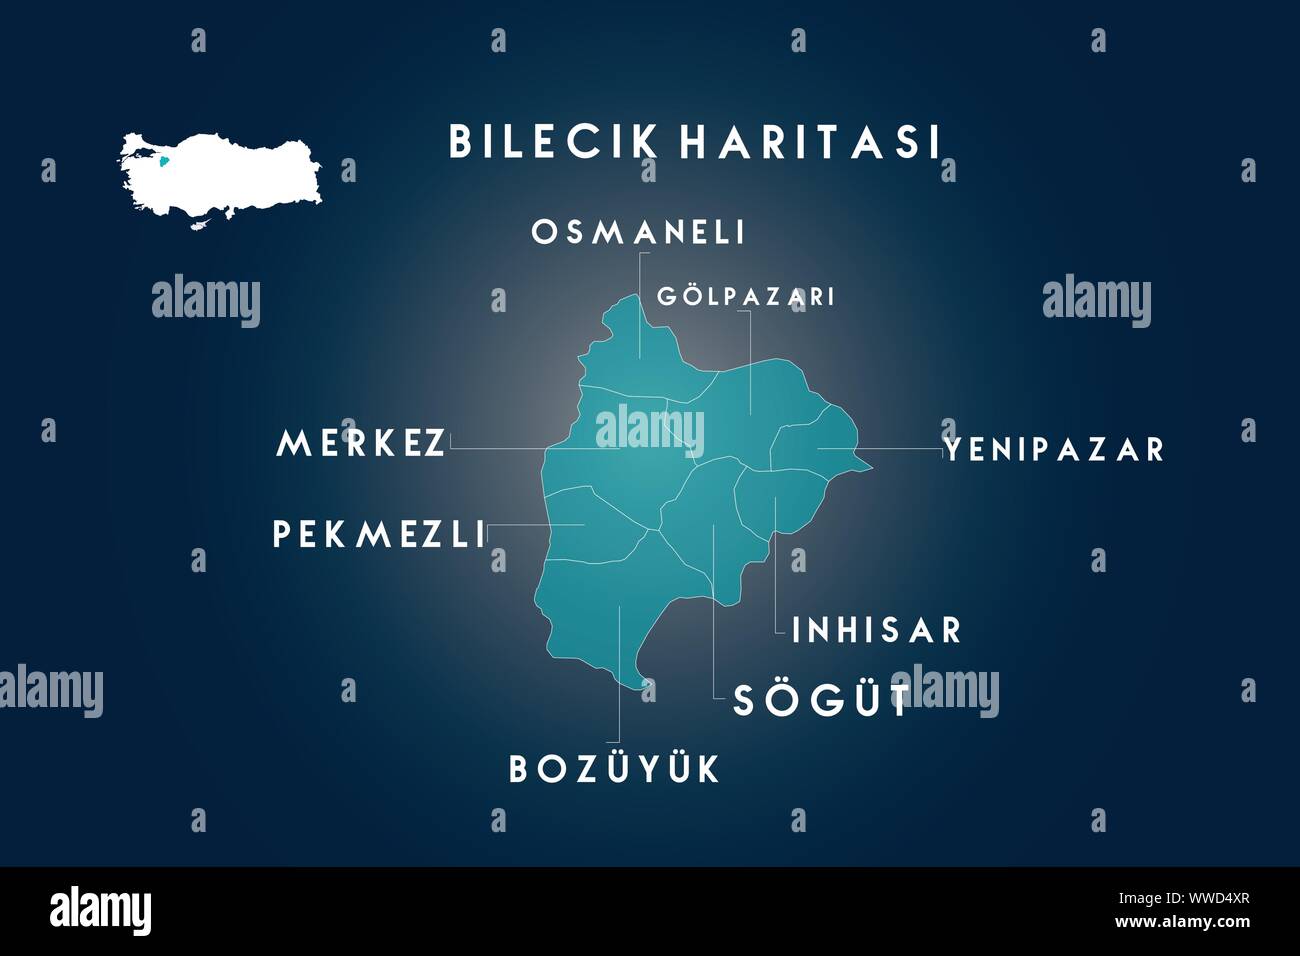 Bilecik Bezirke osmaneli, pekmezli, bozuyuk, sogut, inhisar, yenipazar, golpazari Karte, Türkei Stock Vektor